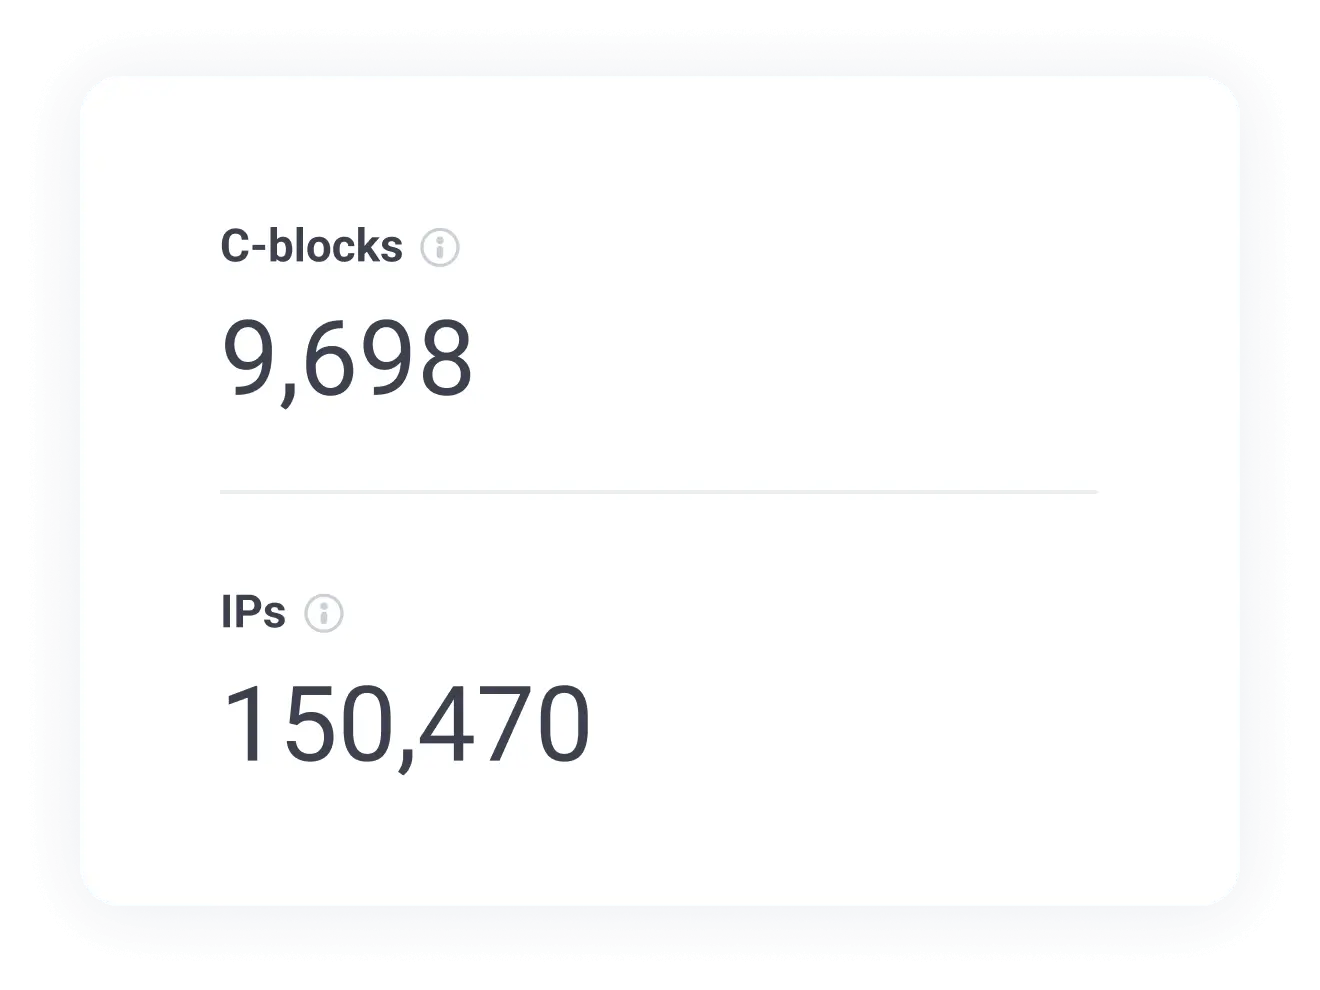 Ellenőrizze az egyedi IP-címek és C-blokkok számát